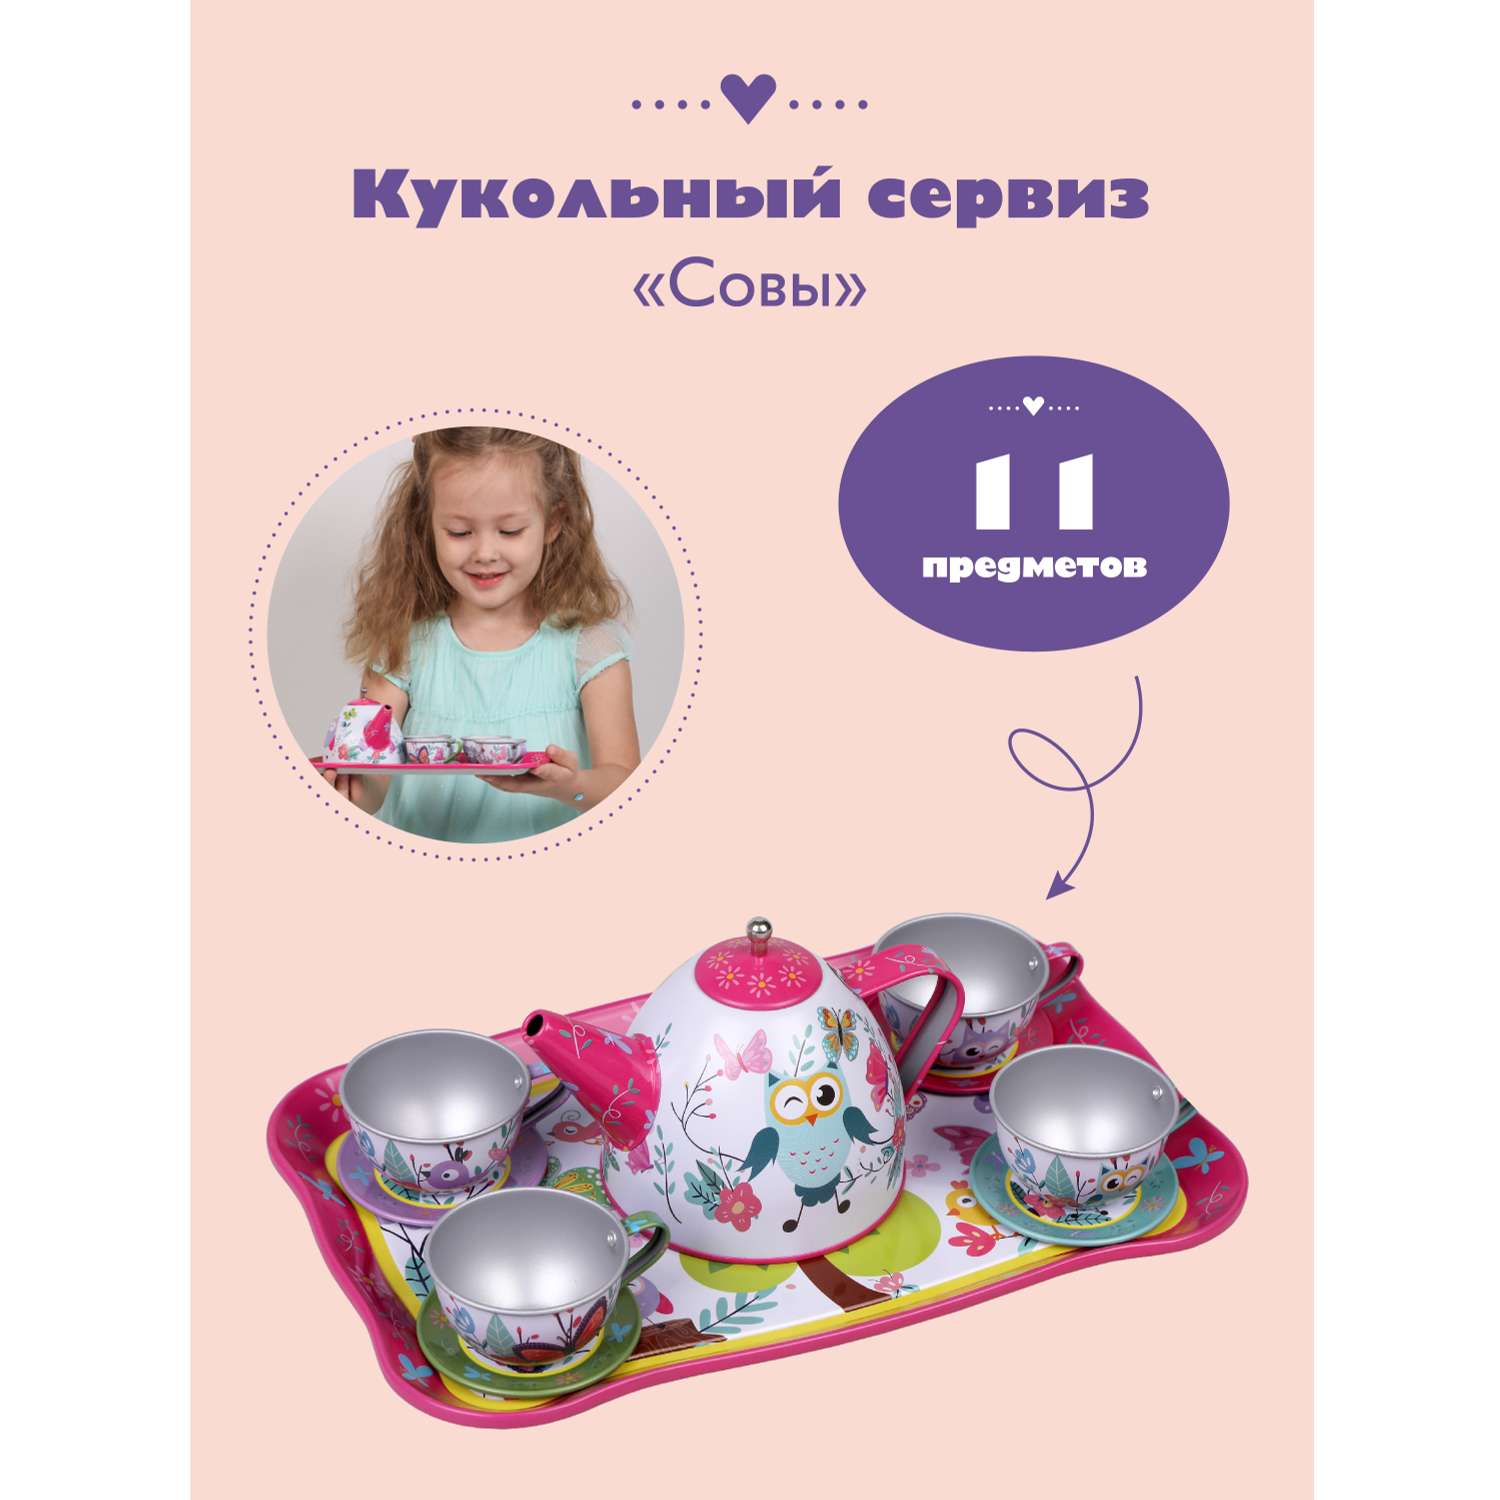 Набор игрушечной посуды Mary Poppins чайный сервиз металлический Совы 11 предметов - фото 1